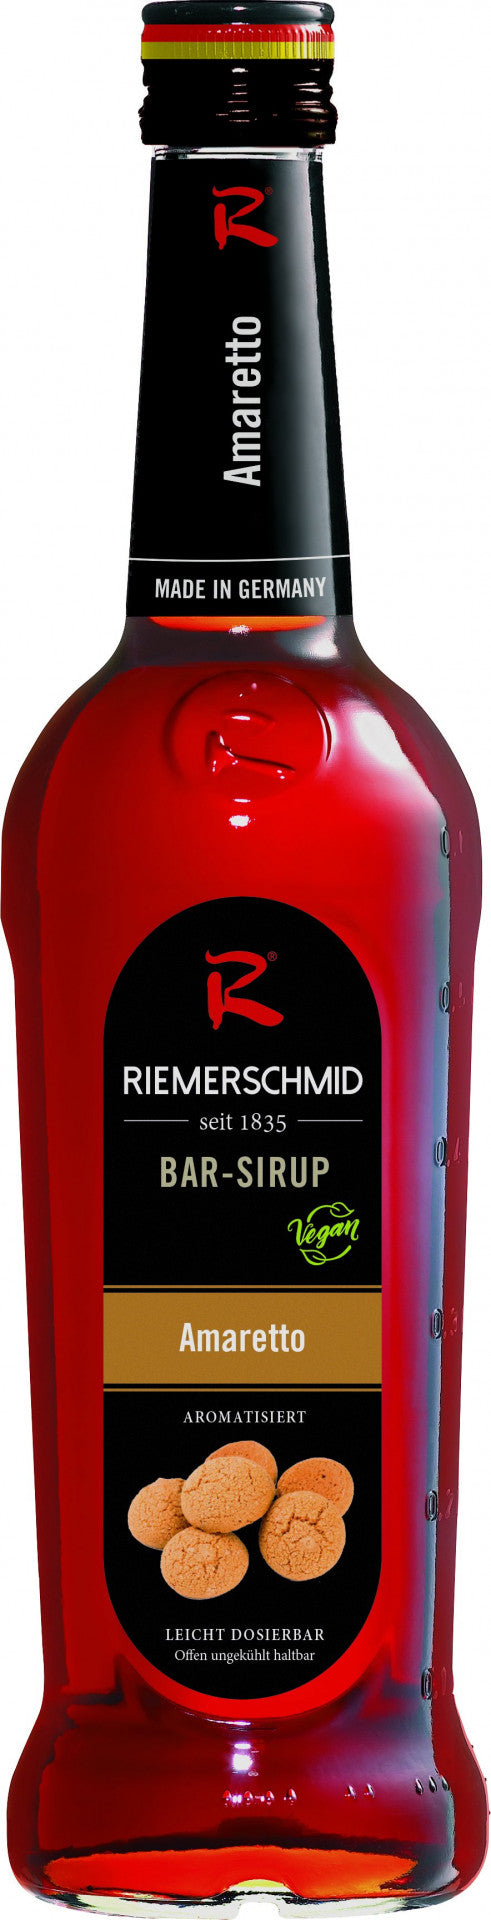 Riemerschmid Bar-Sirup Amaretto Geschmack 0,7L